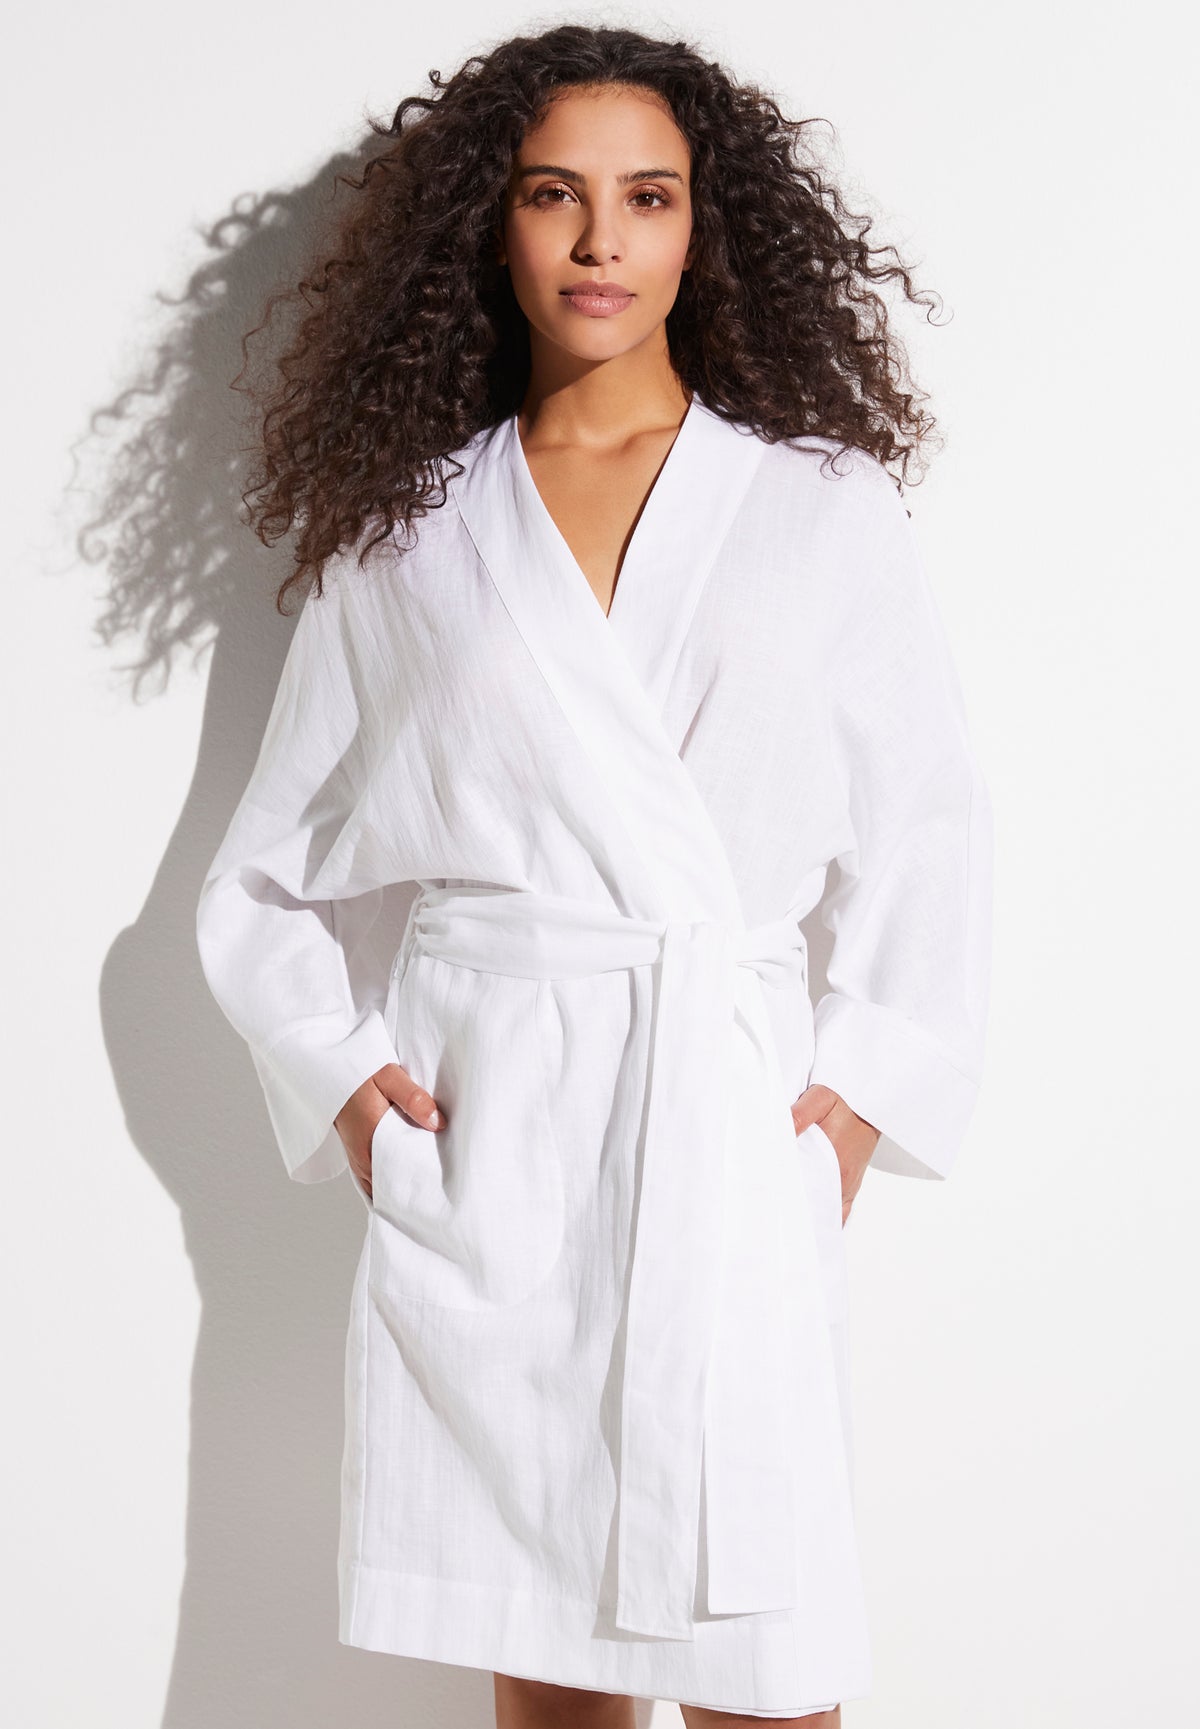 Linen Blend | Robe Short - white